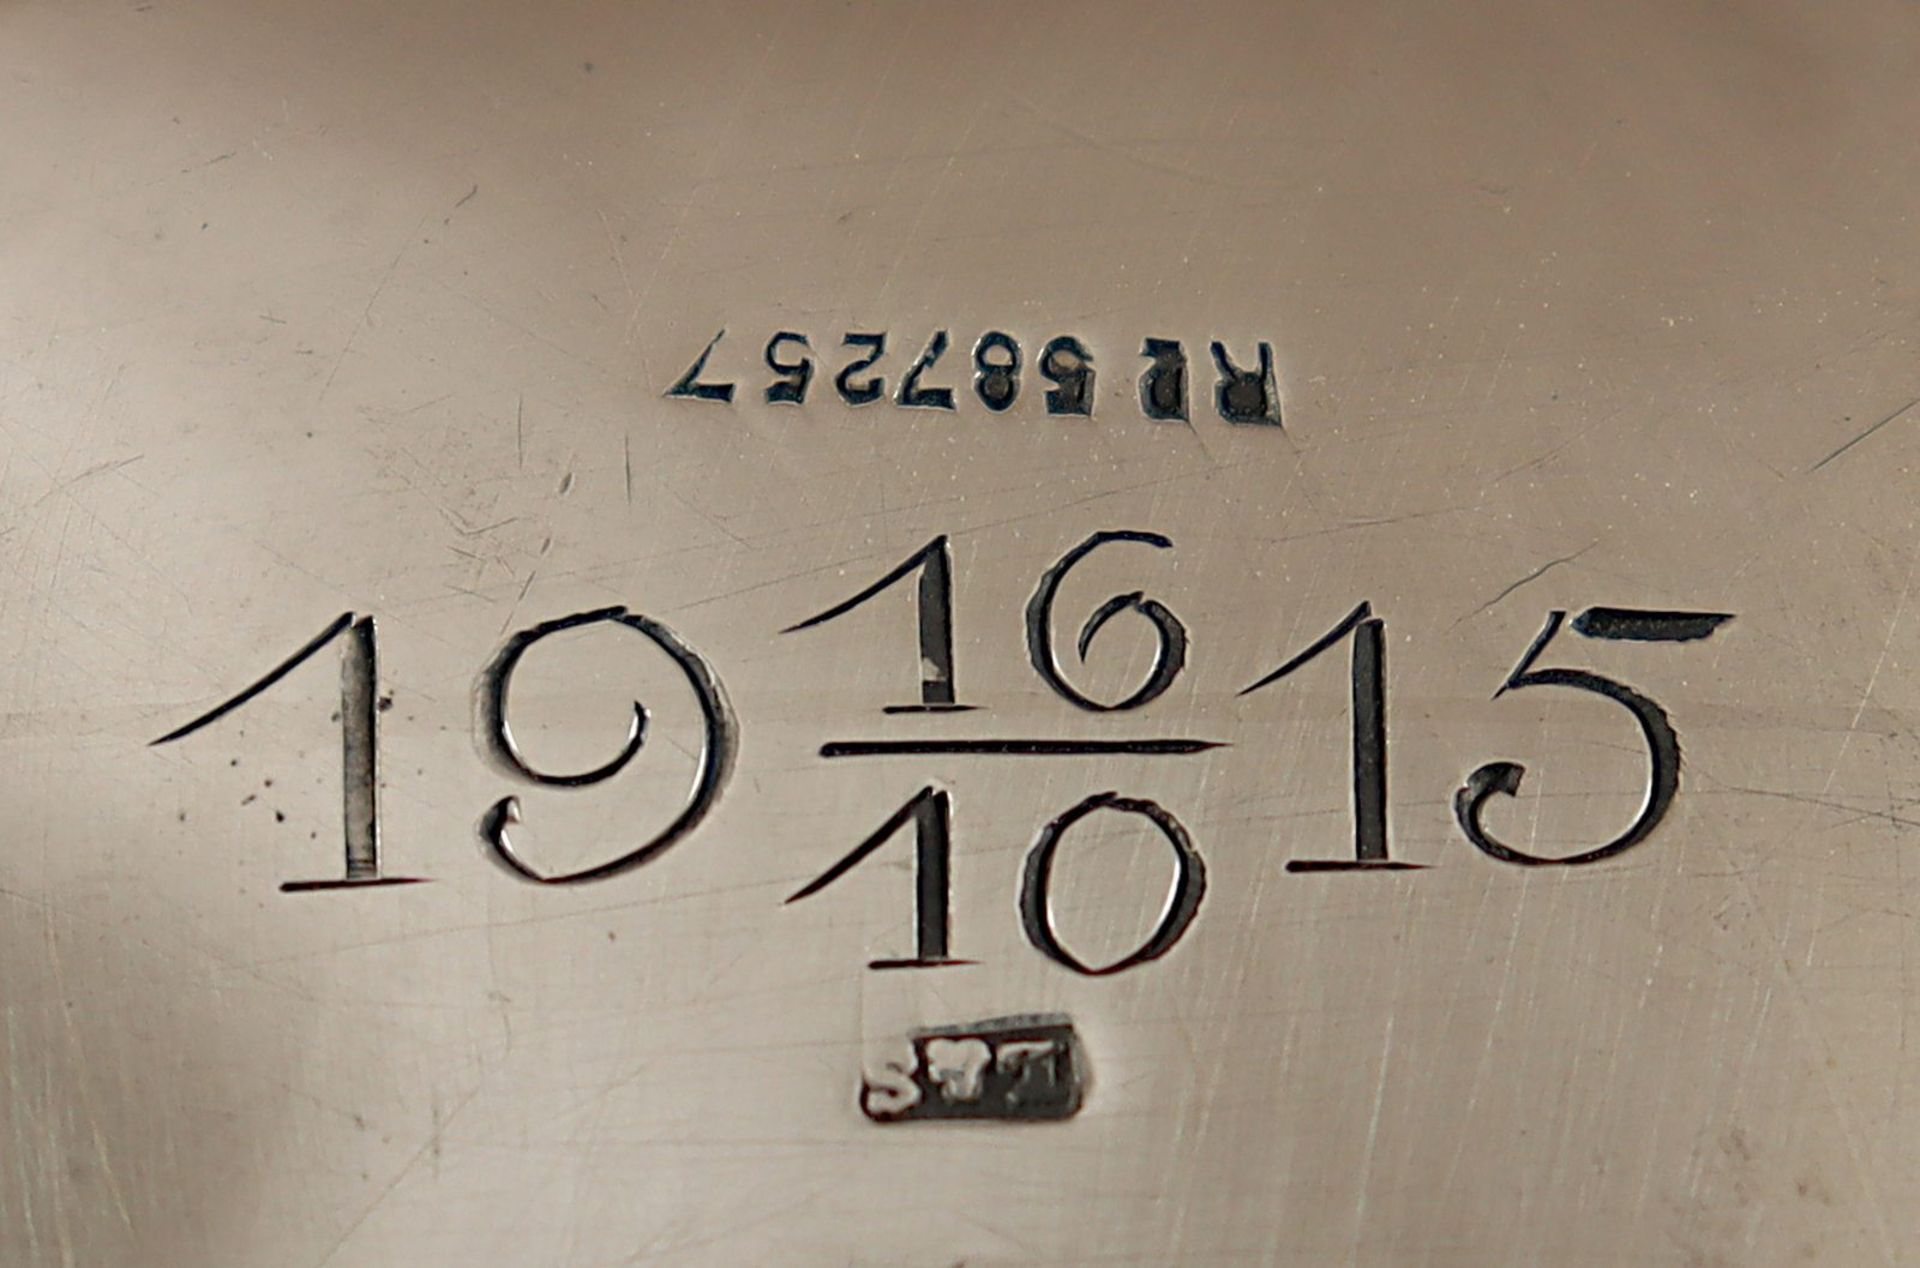 Wasserkessel mit Rechaud, 1190 g, wohl Deutsch, um 1915 - Image 2 of 2